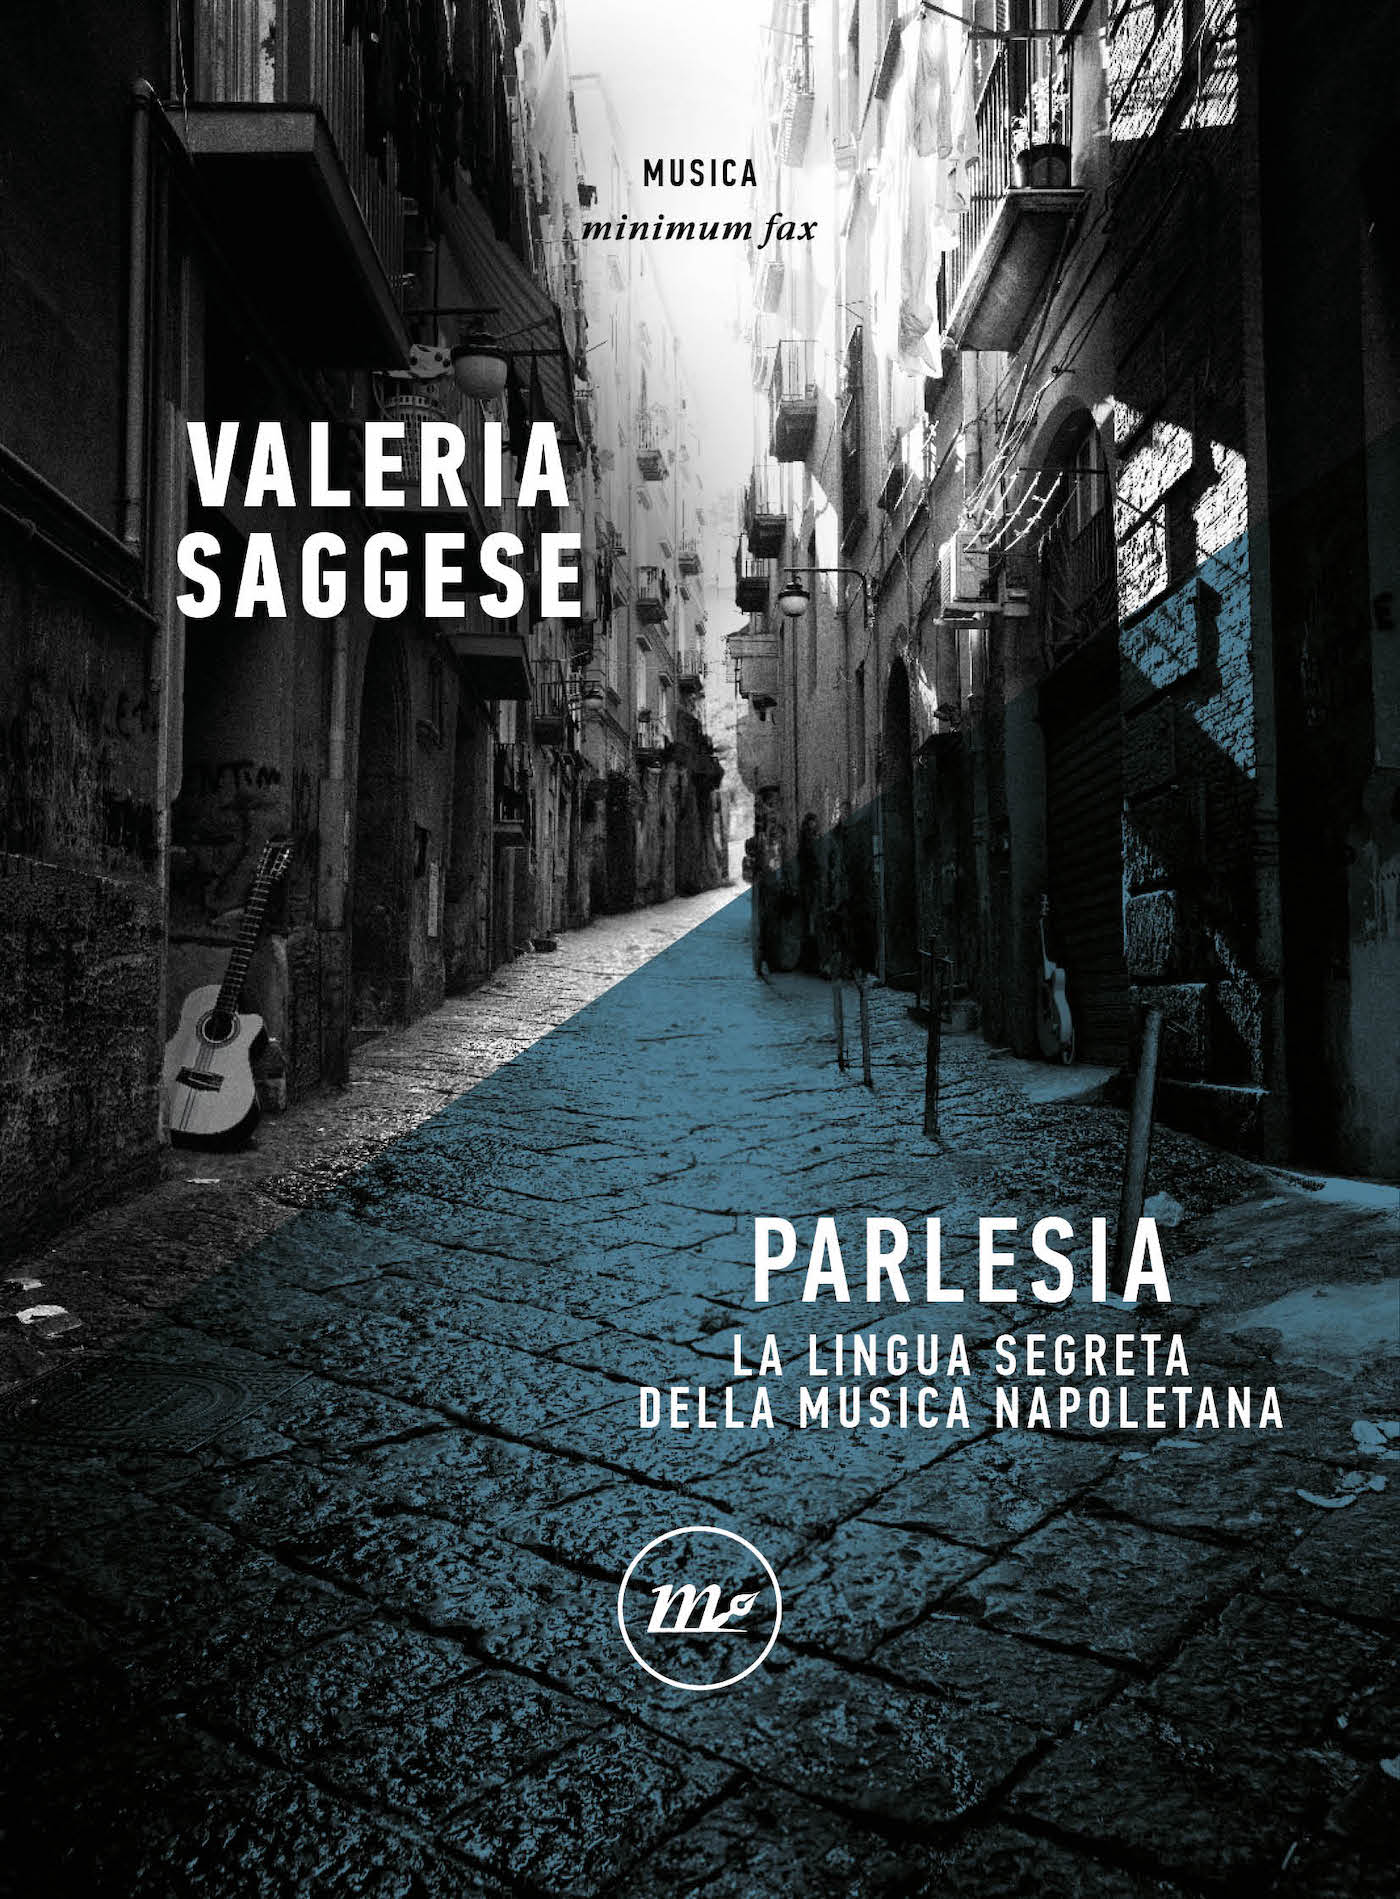 Parlesia: La lingua segreta della musica napoletana